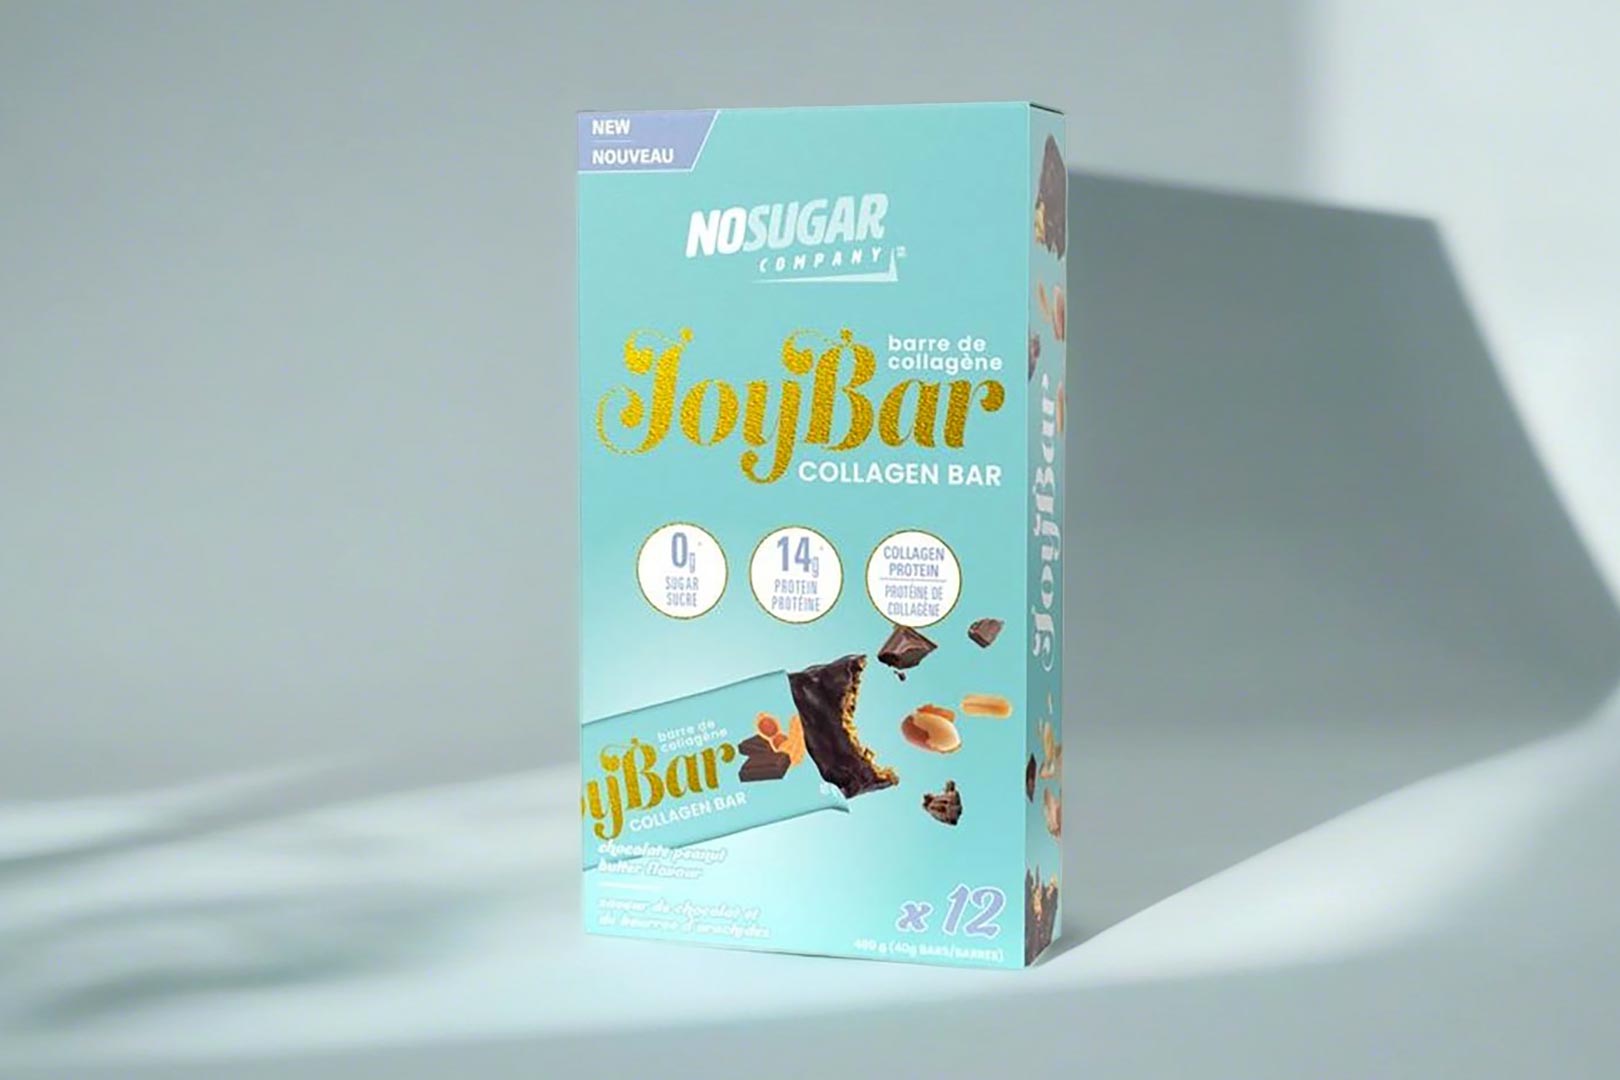 No Sugar Company Announces Collagen Joybar